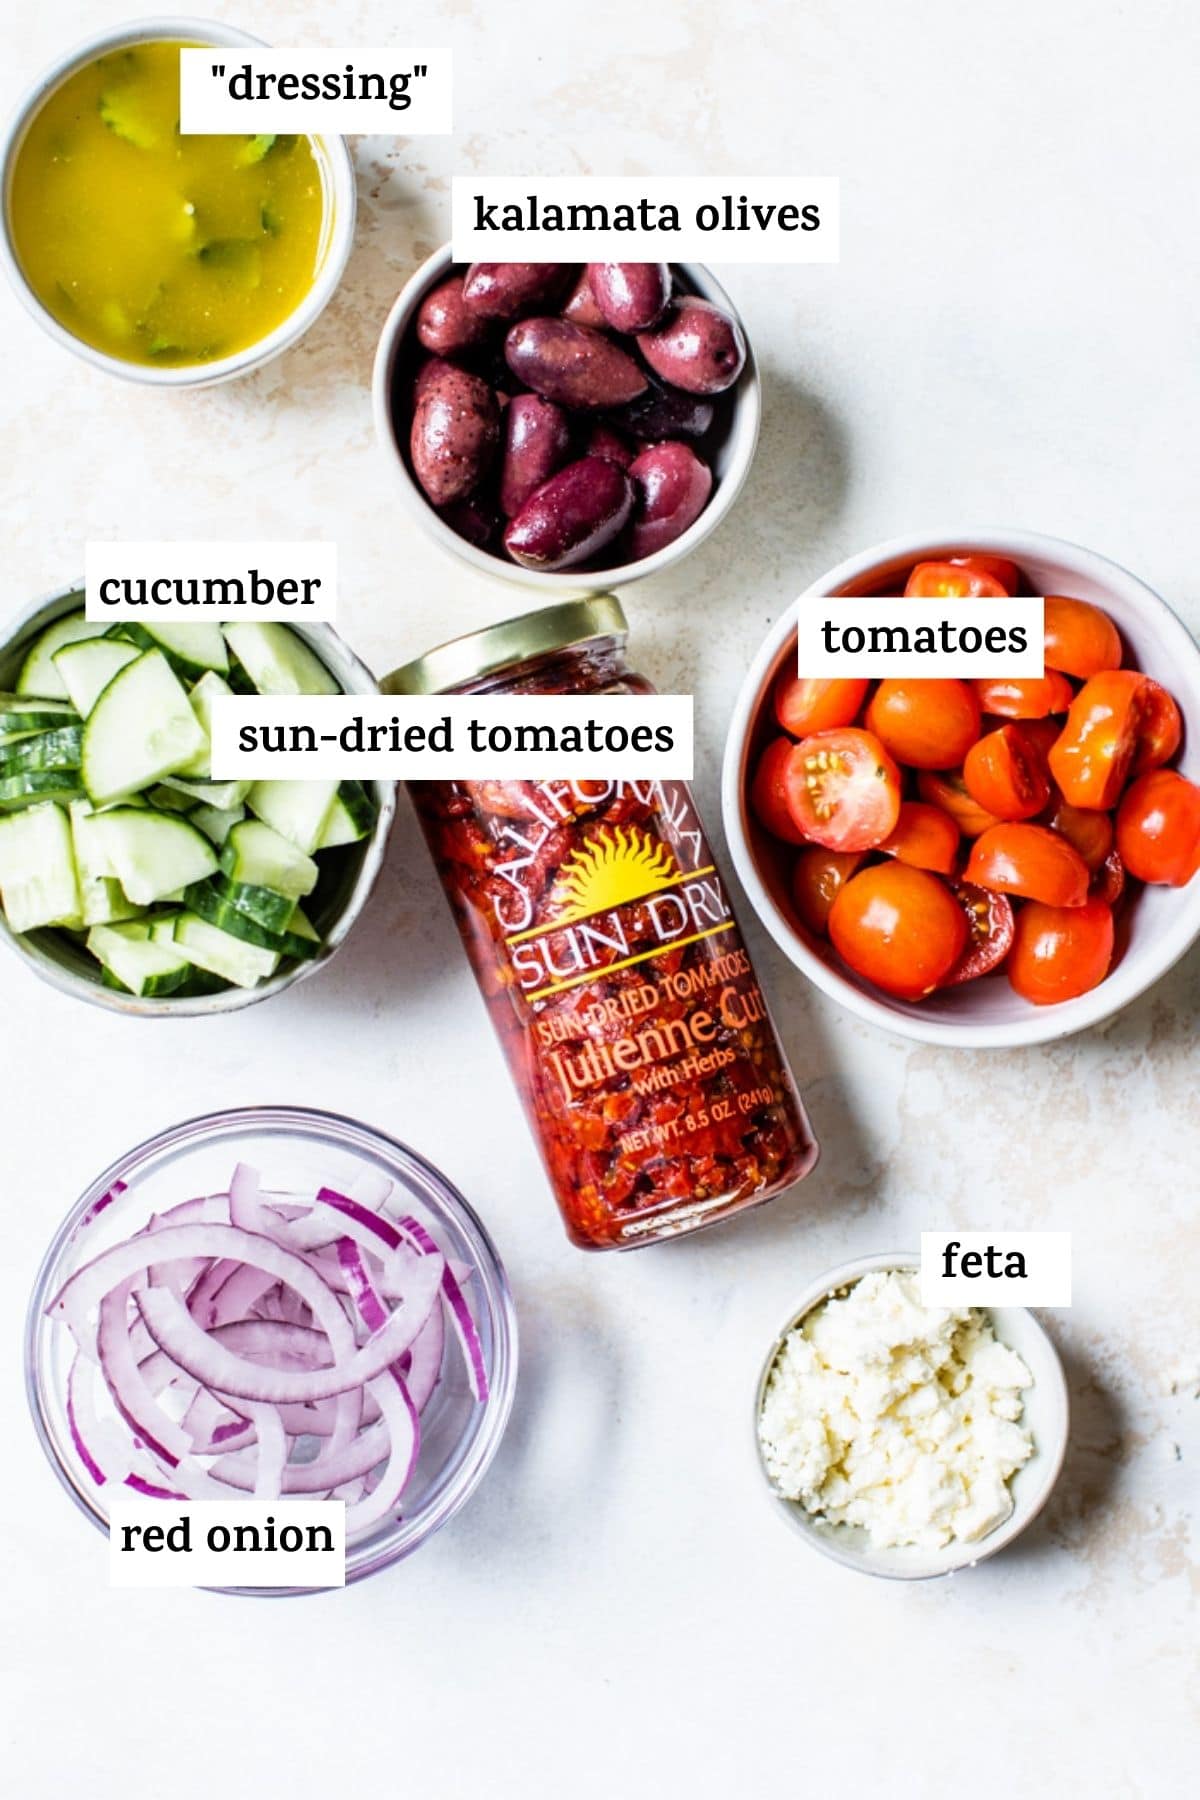 ingrediënten voor het maken van pastasalade zoals zongedroogde tomaten en rode ui